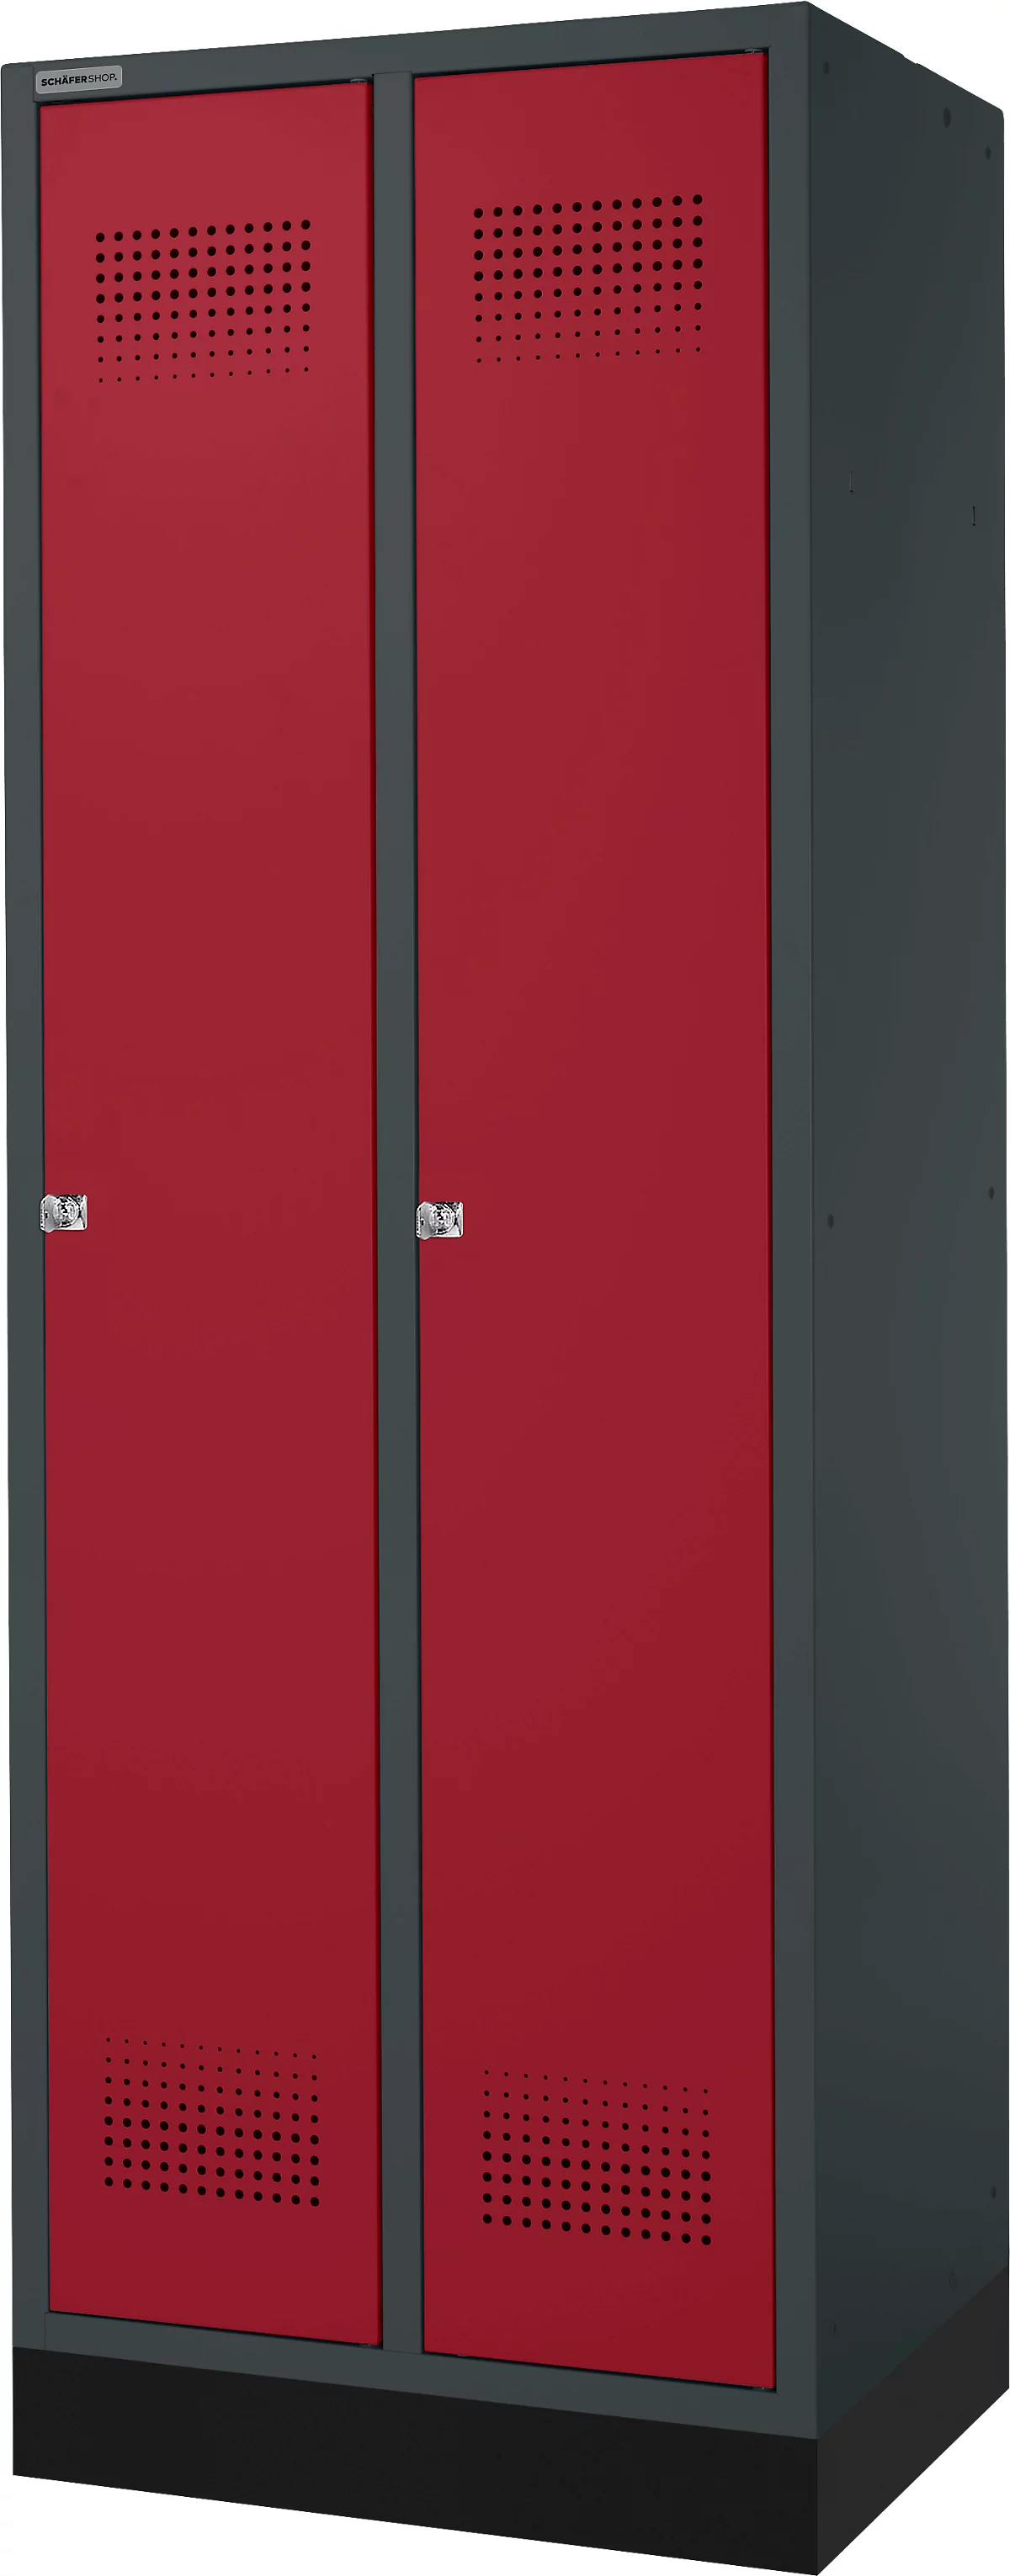 Schäfer Shop Genius Taquilla con zócalo, 2 compartimentos, cerradura de cilindro, antracita RAL 7016/rojo